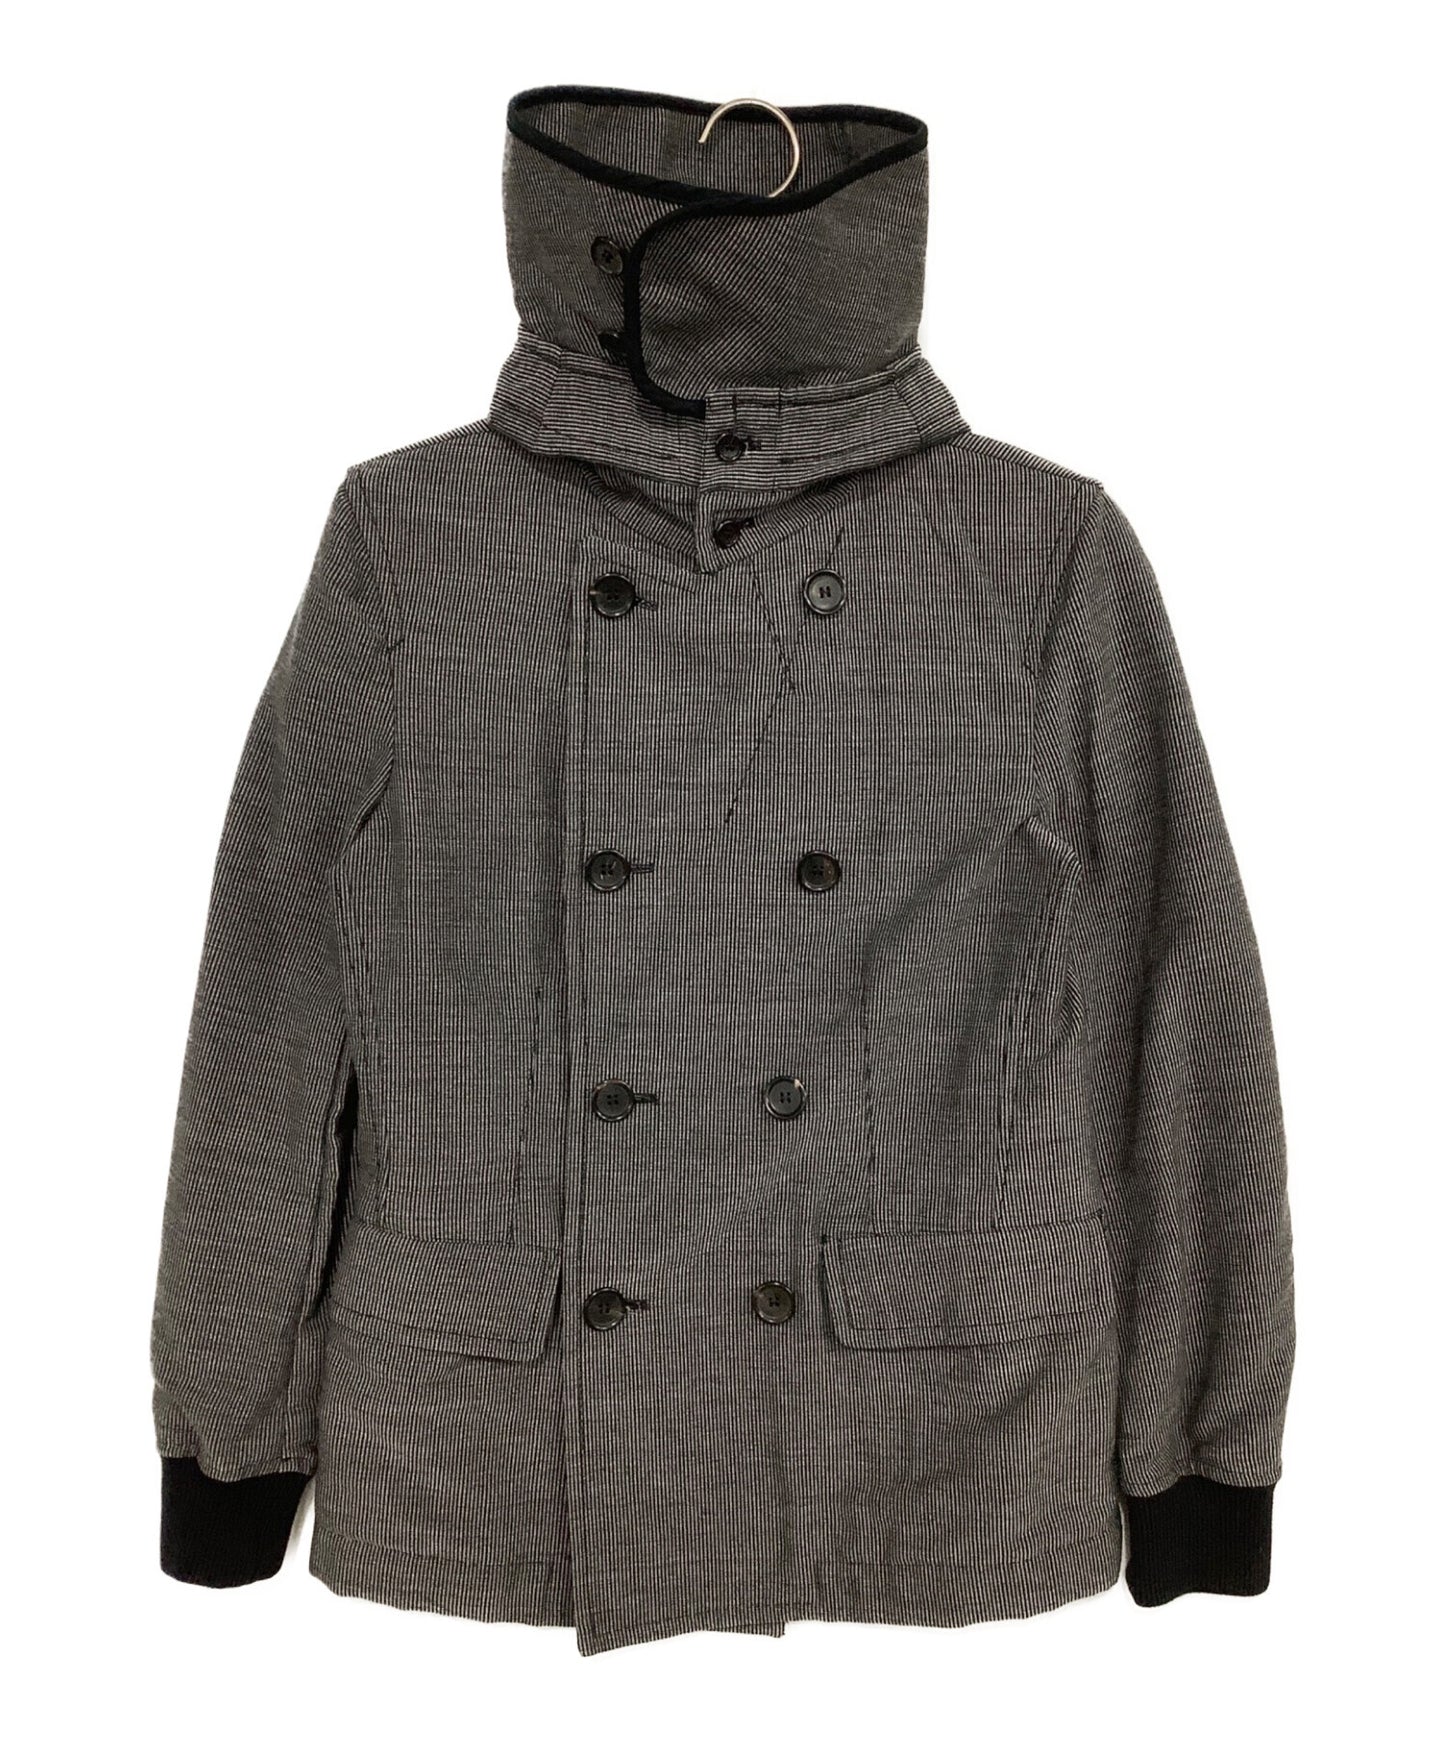 Comme des Garcons เสื้อแจ็คเก็ตคอสูง W20102